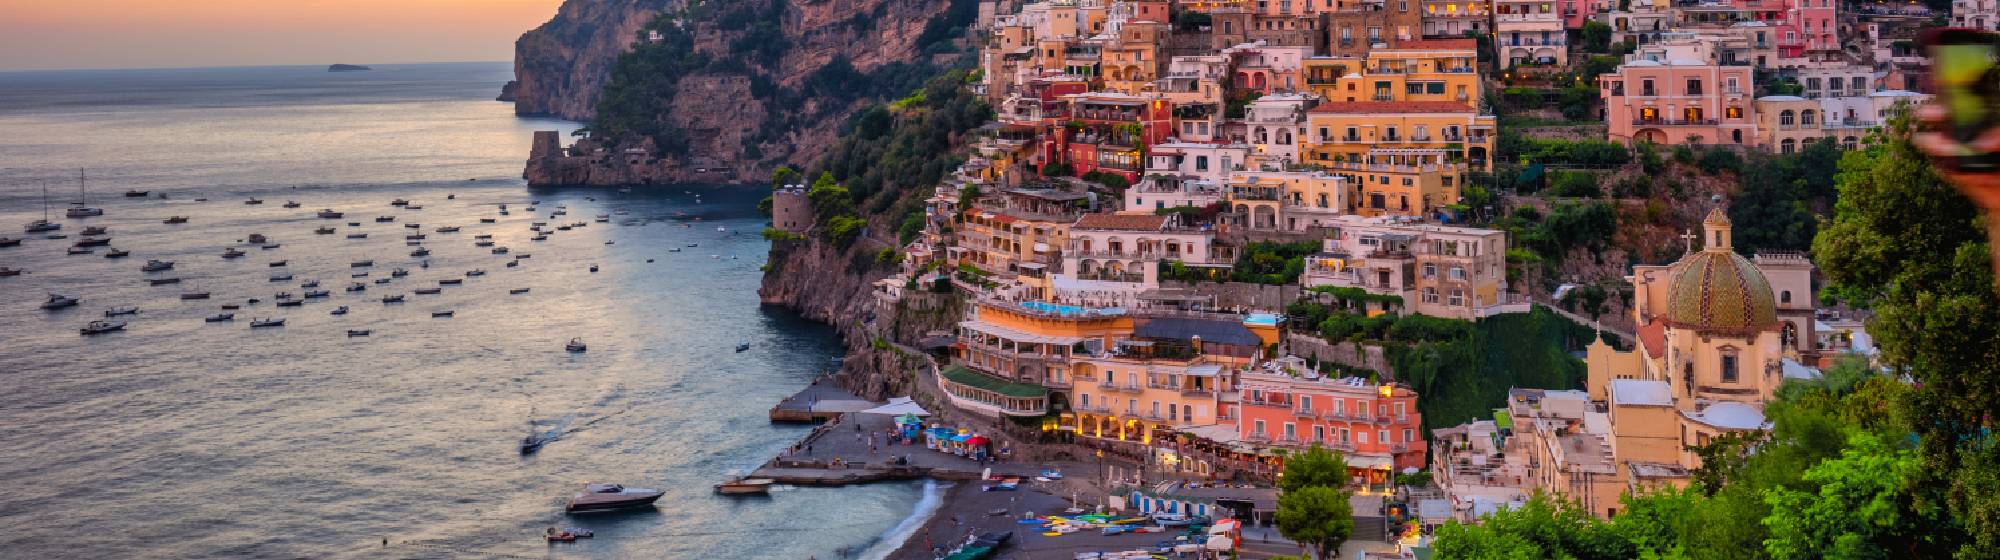 La côte d’Amalfi au coucher du soleil